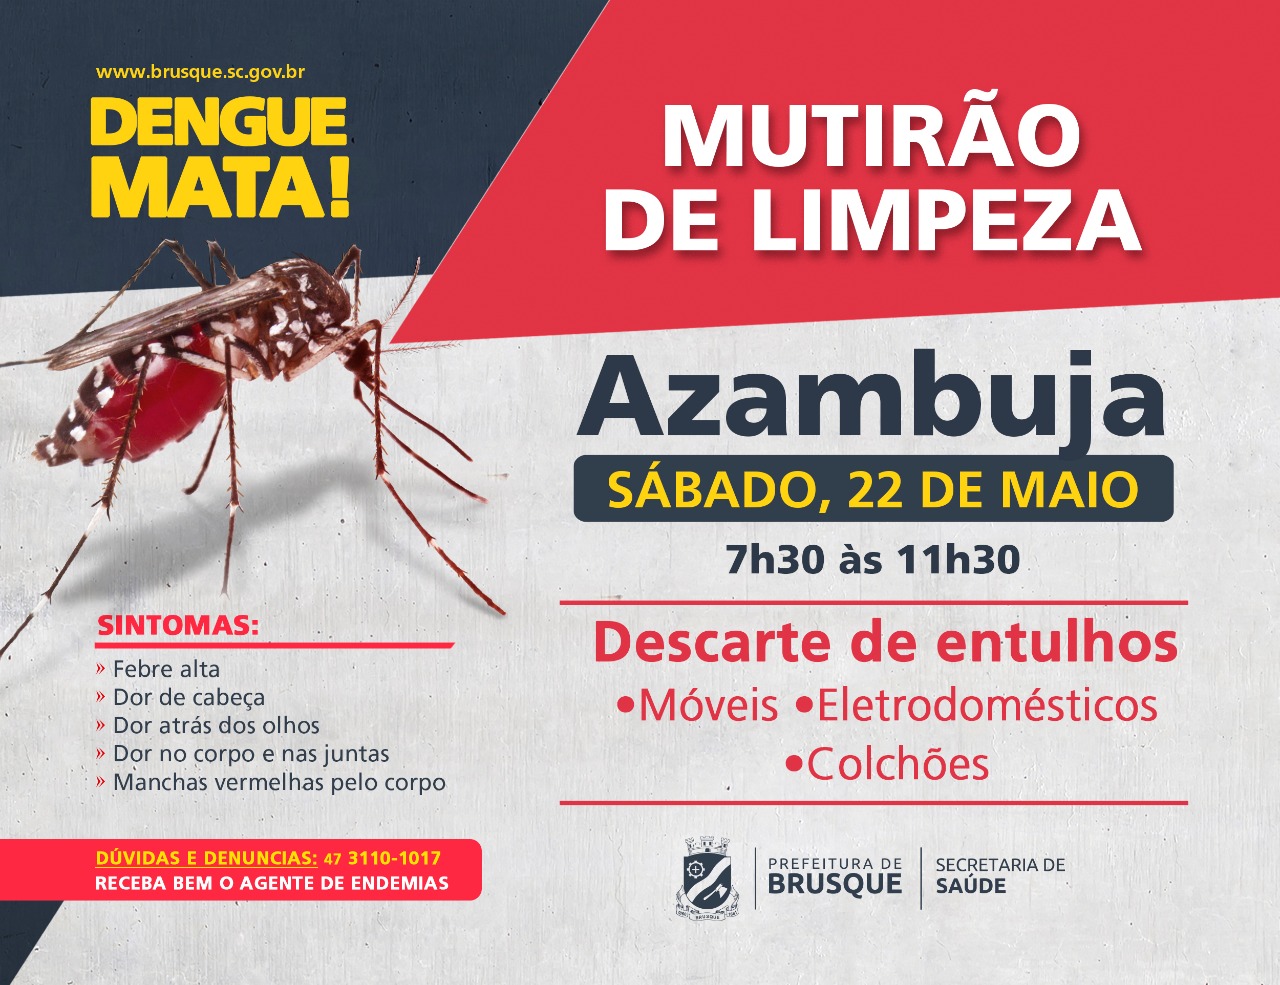 Combate à Dengue: Azambuja recebe mutirão de limpeza neste sábado